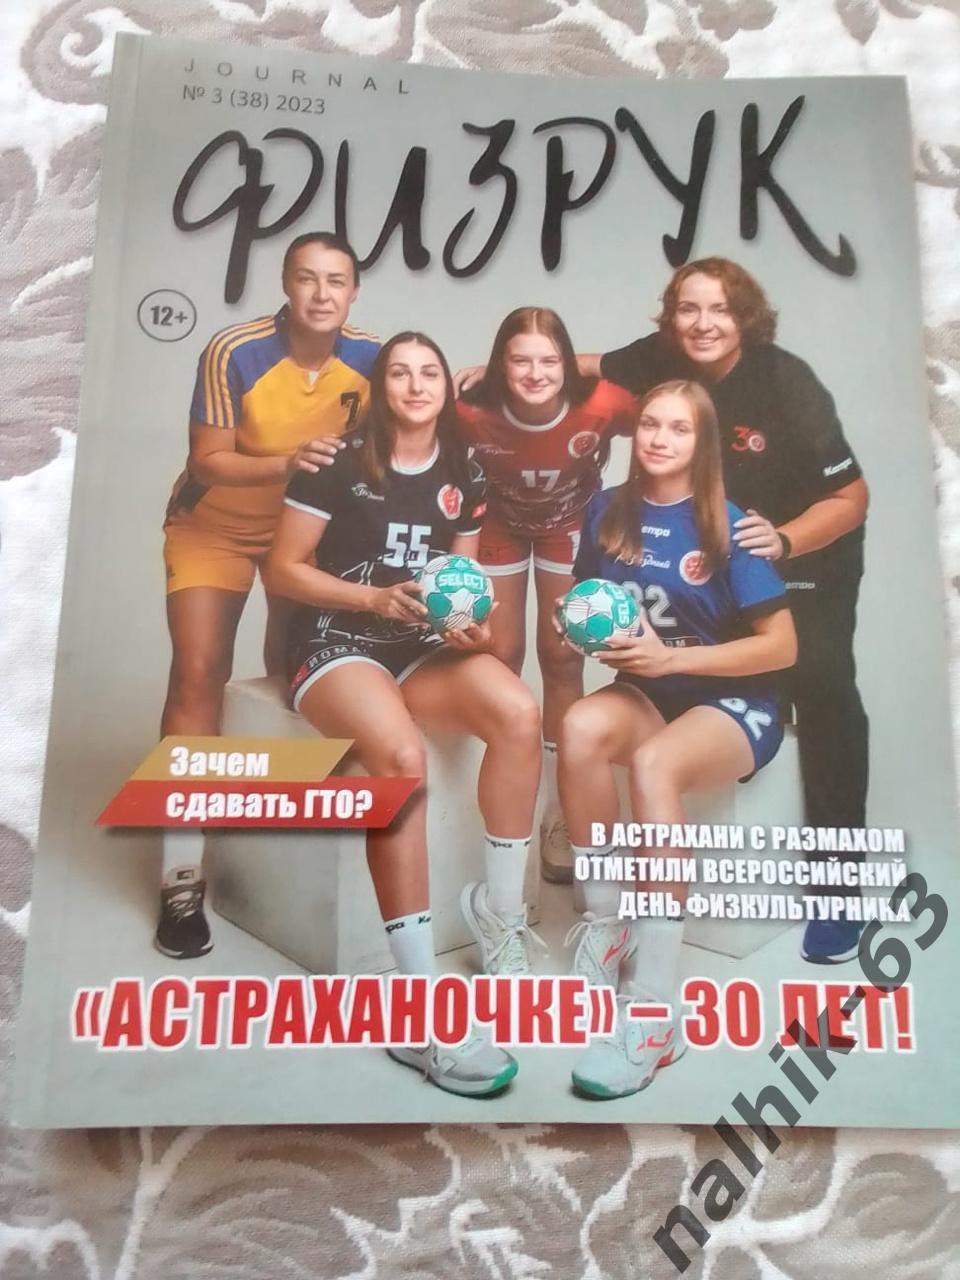 Журнал Физрук №3 2023 год Астраханочке 30 лет гандбол